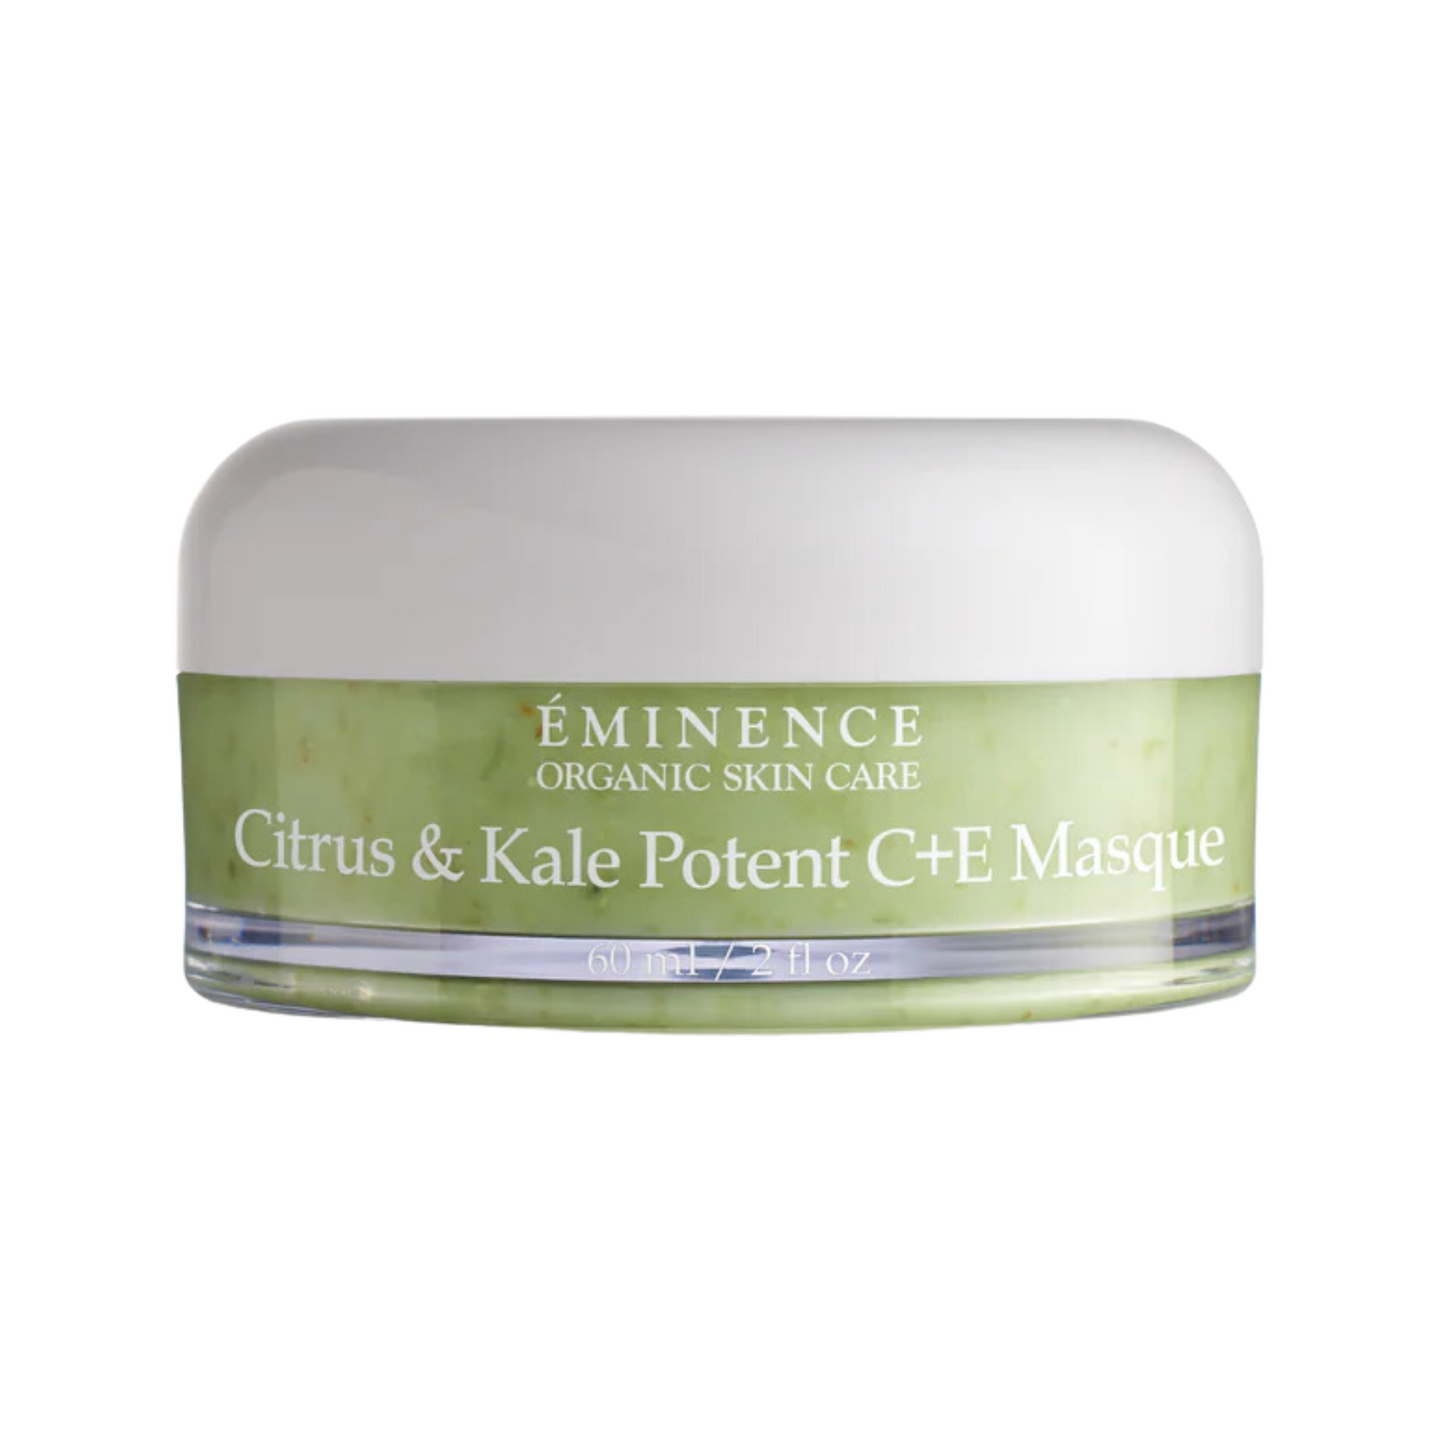 Citrus & Kale Potent C+E Masque - Eminence Organic Skin Care